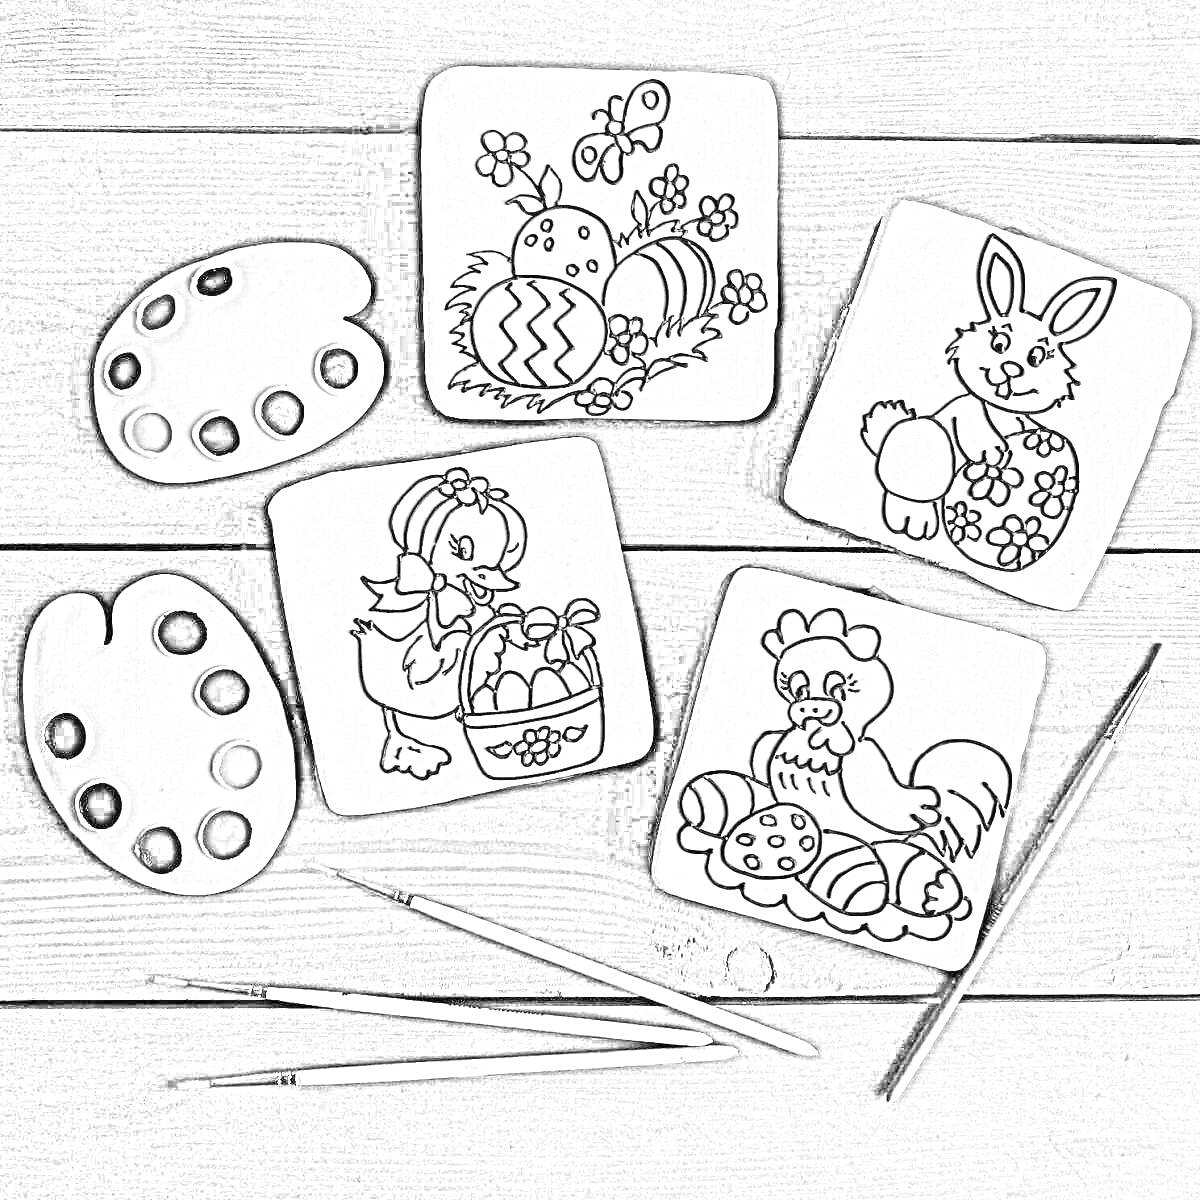 раскраска-пряники с изображением пасхального яйца, кролика с цветочком, цыпленка с корзиной, курицы, двух палитр с красками и тремя кисточками на деревянной поверхности